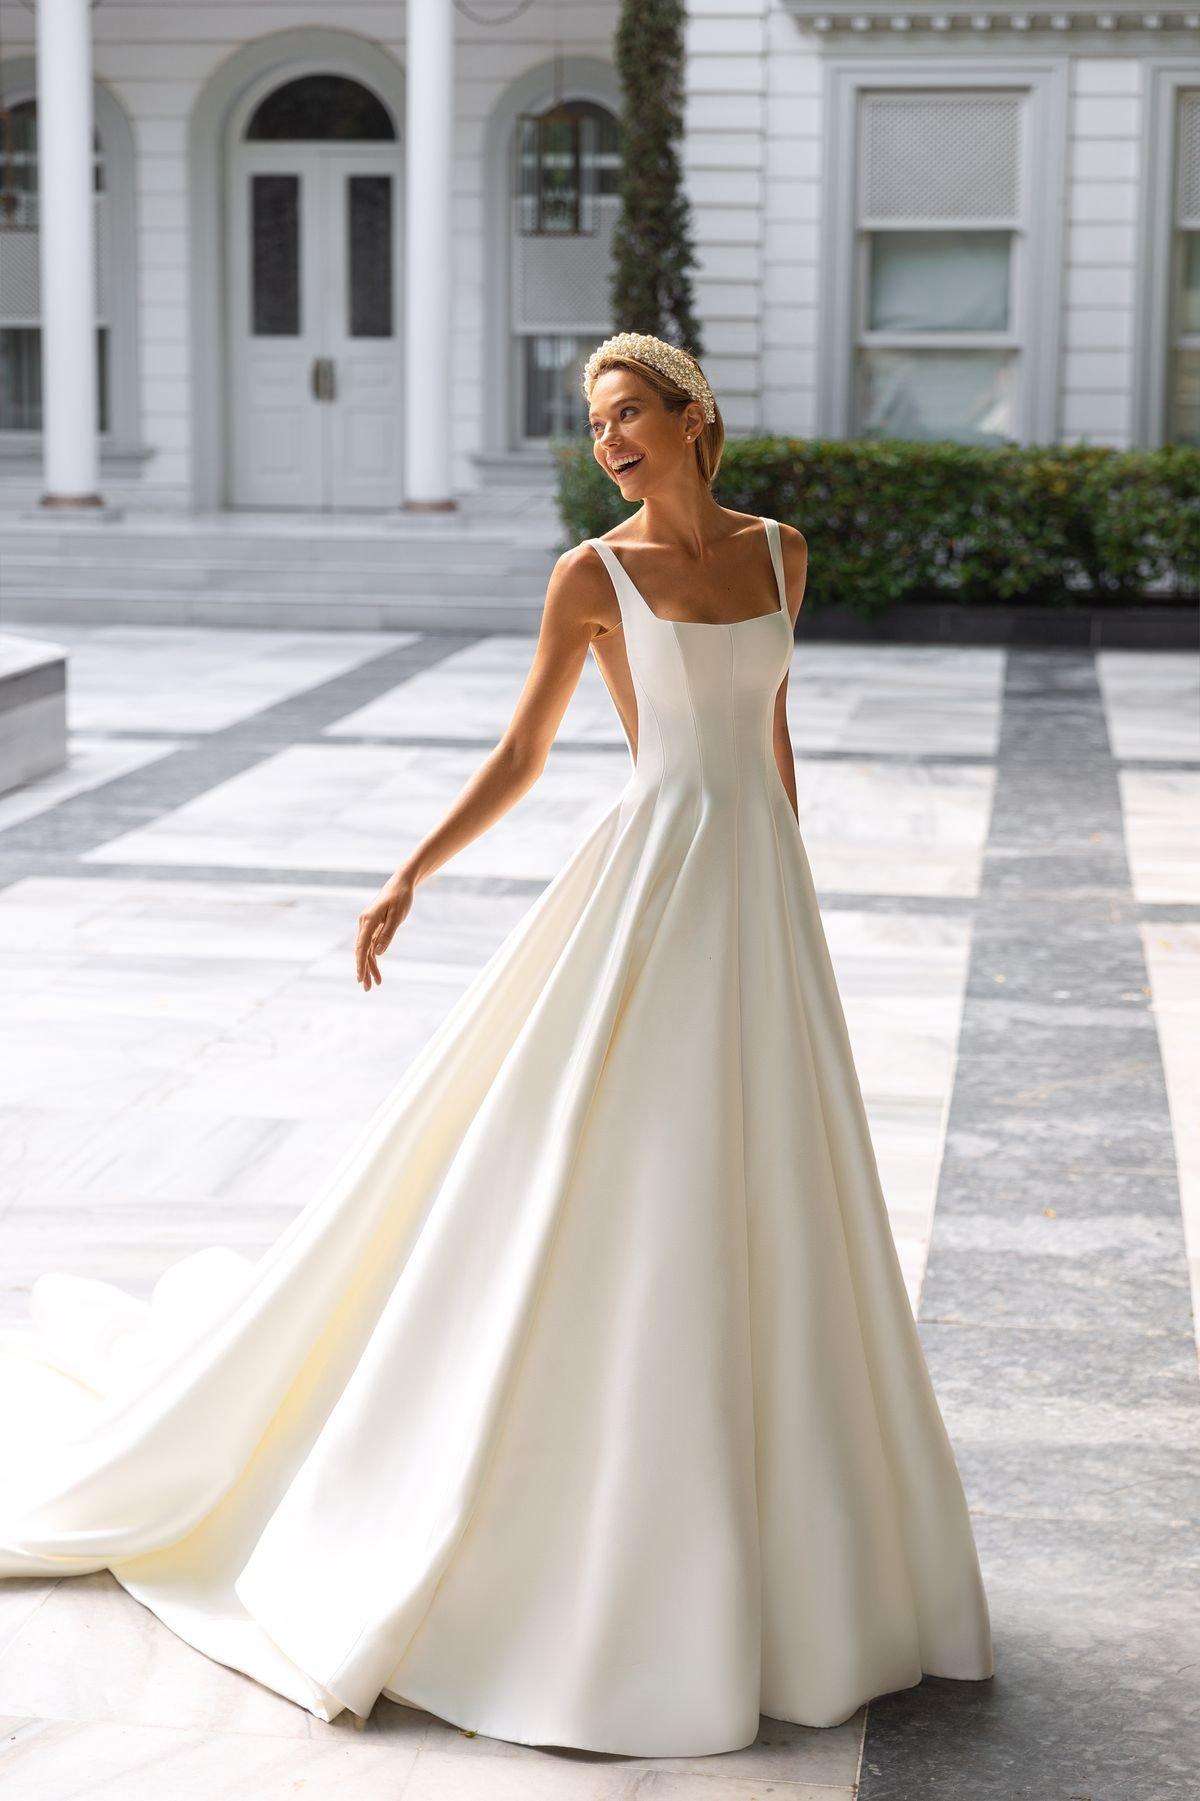 Asistir flexible Temporada Tipos de telas para el vestido de novia: ¡conoce todas las opciones!